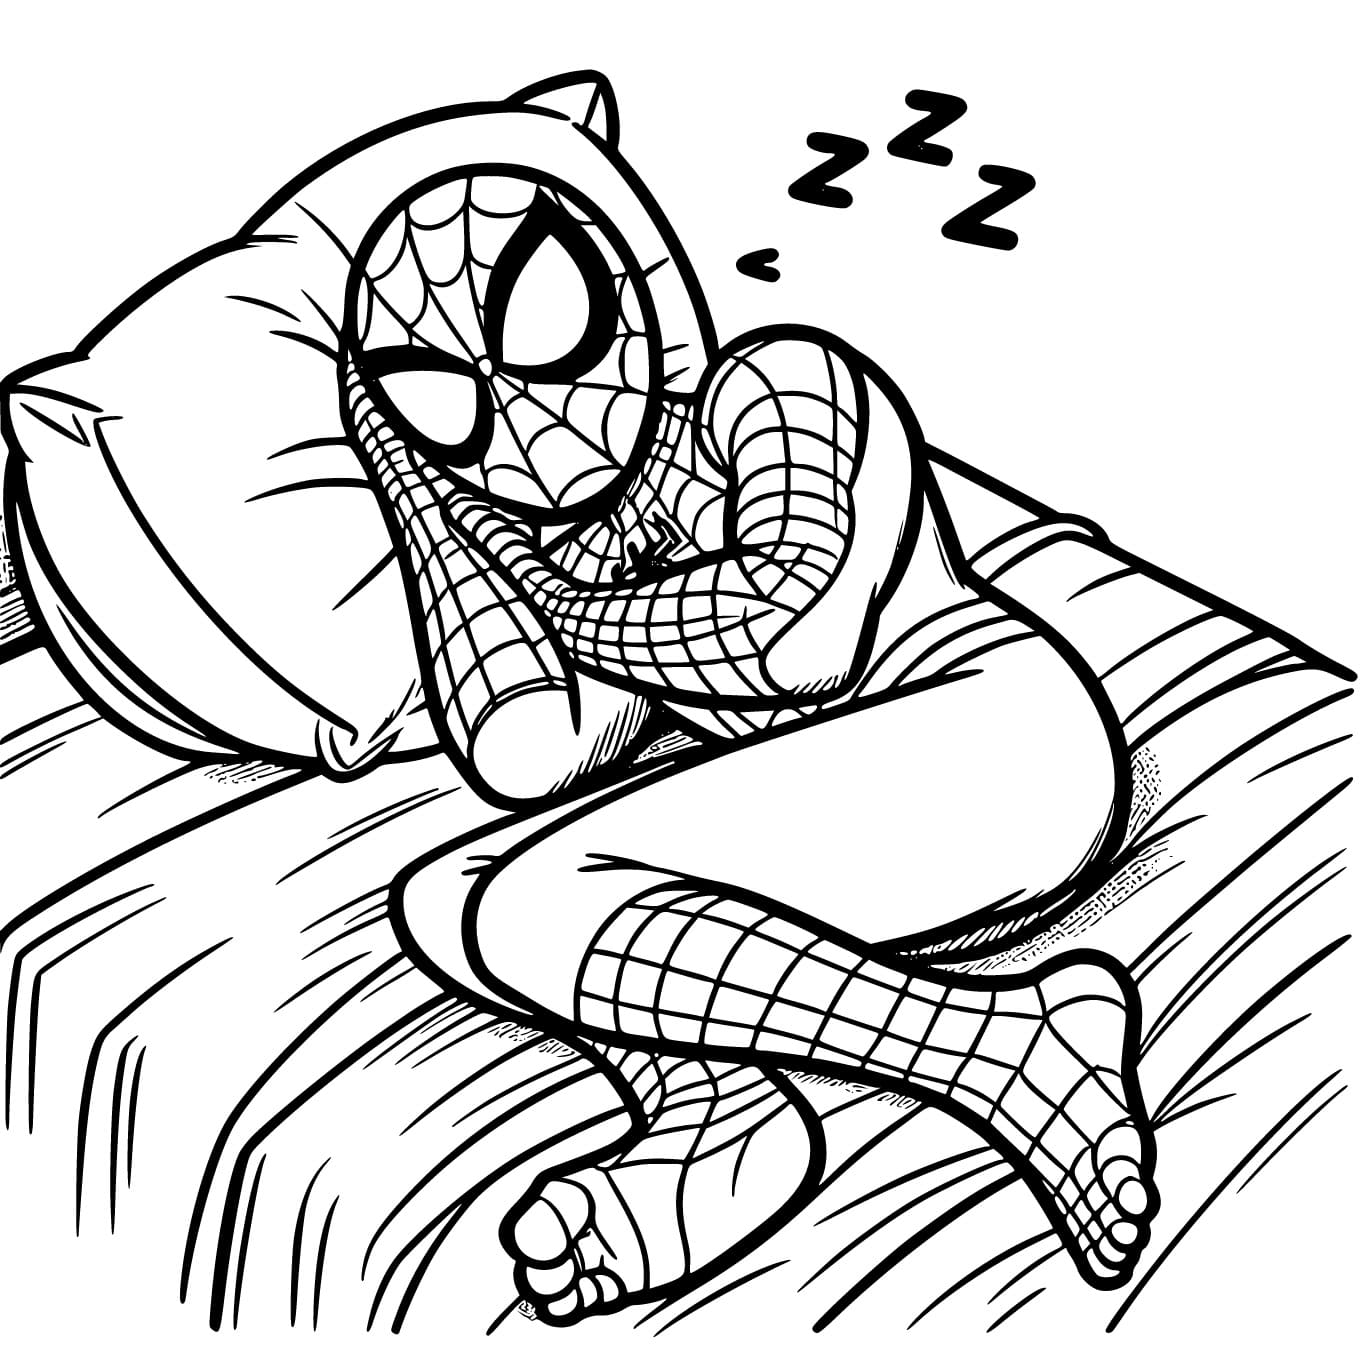 Spiderman Endormi coloring page